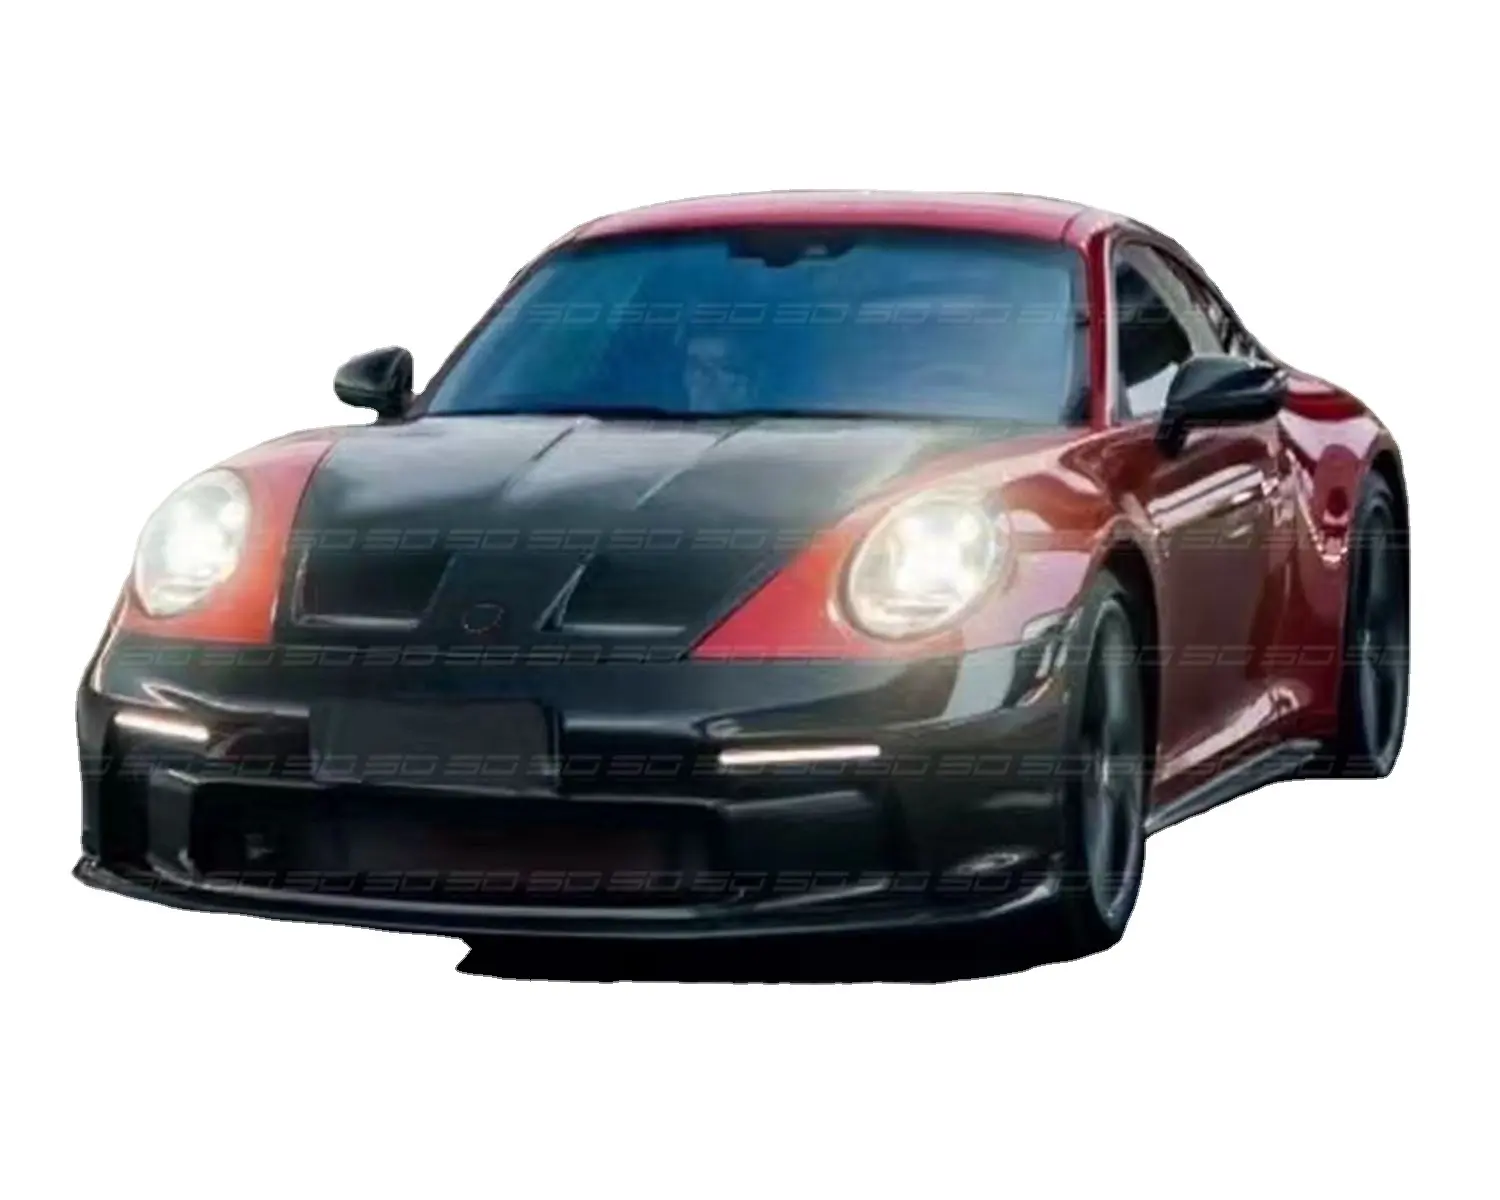 Parachoques delantero y trasero de fibra de carbono para coche, Kit de carrocería para Porsche 911 992, estilo GT-3